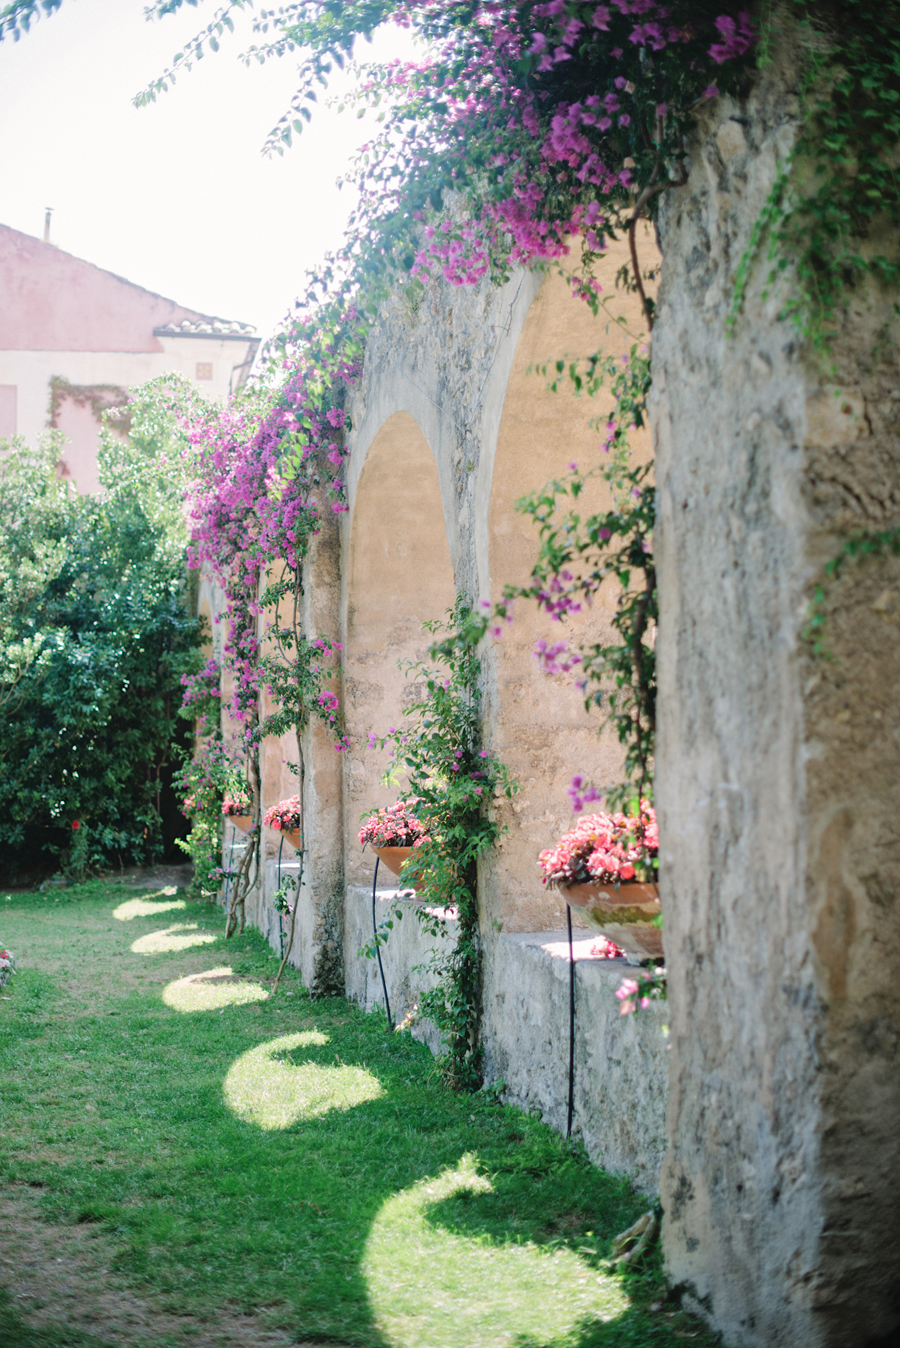 Gardens at Villa Cimbrone in Ravello Italy